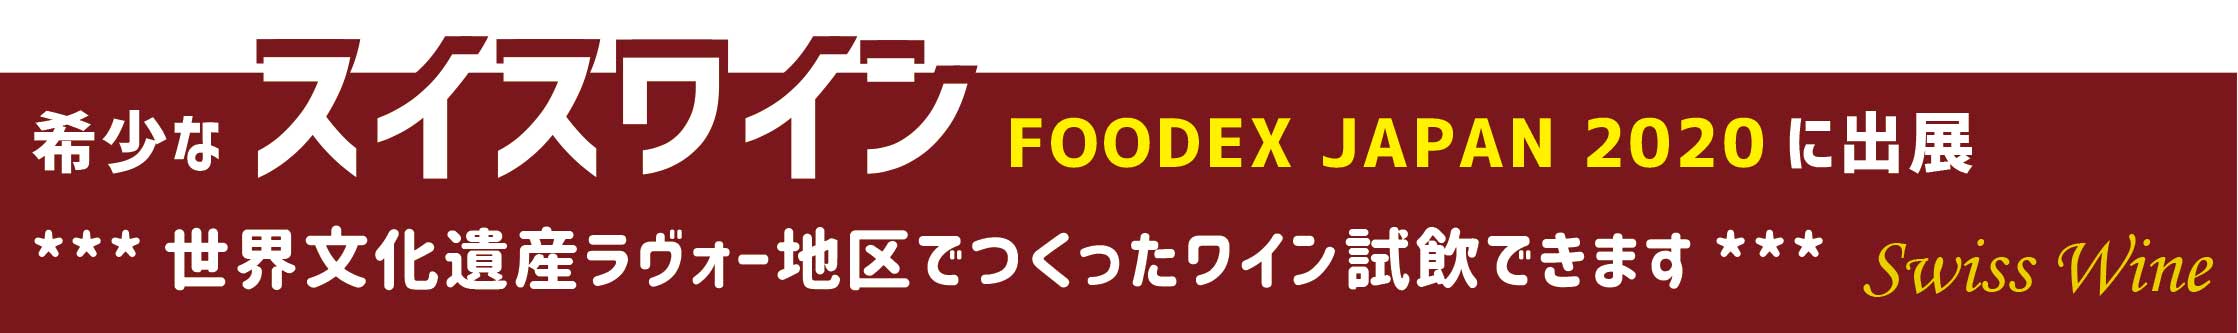 foodex1